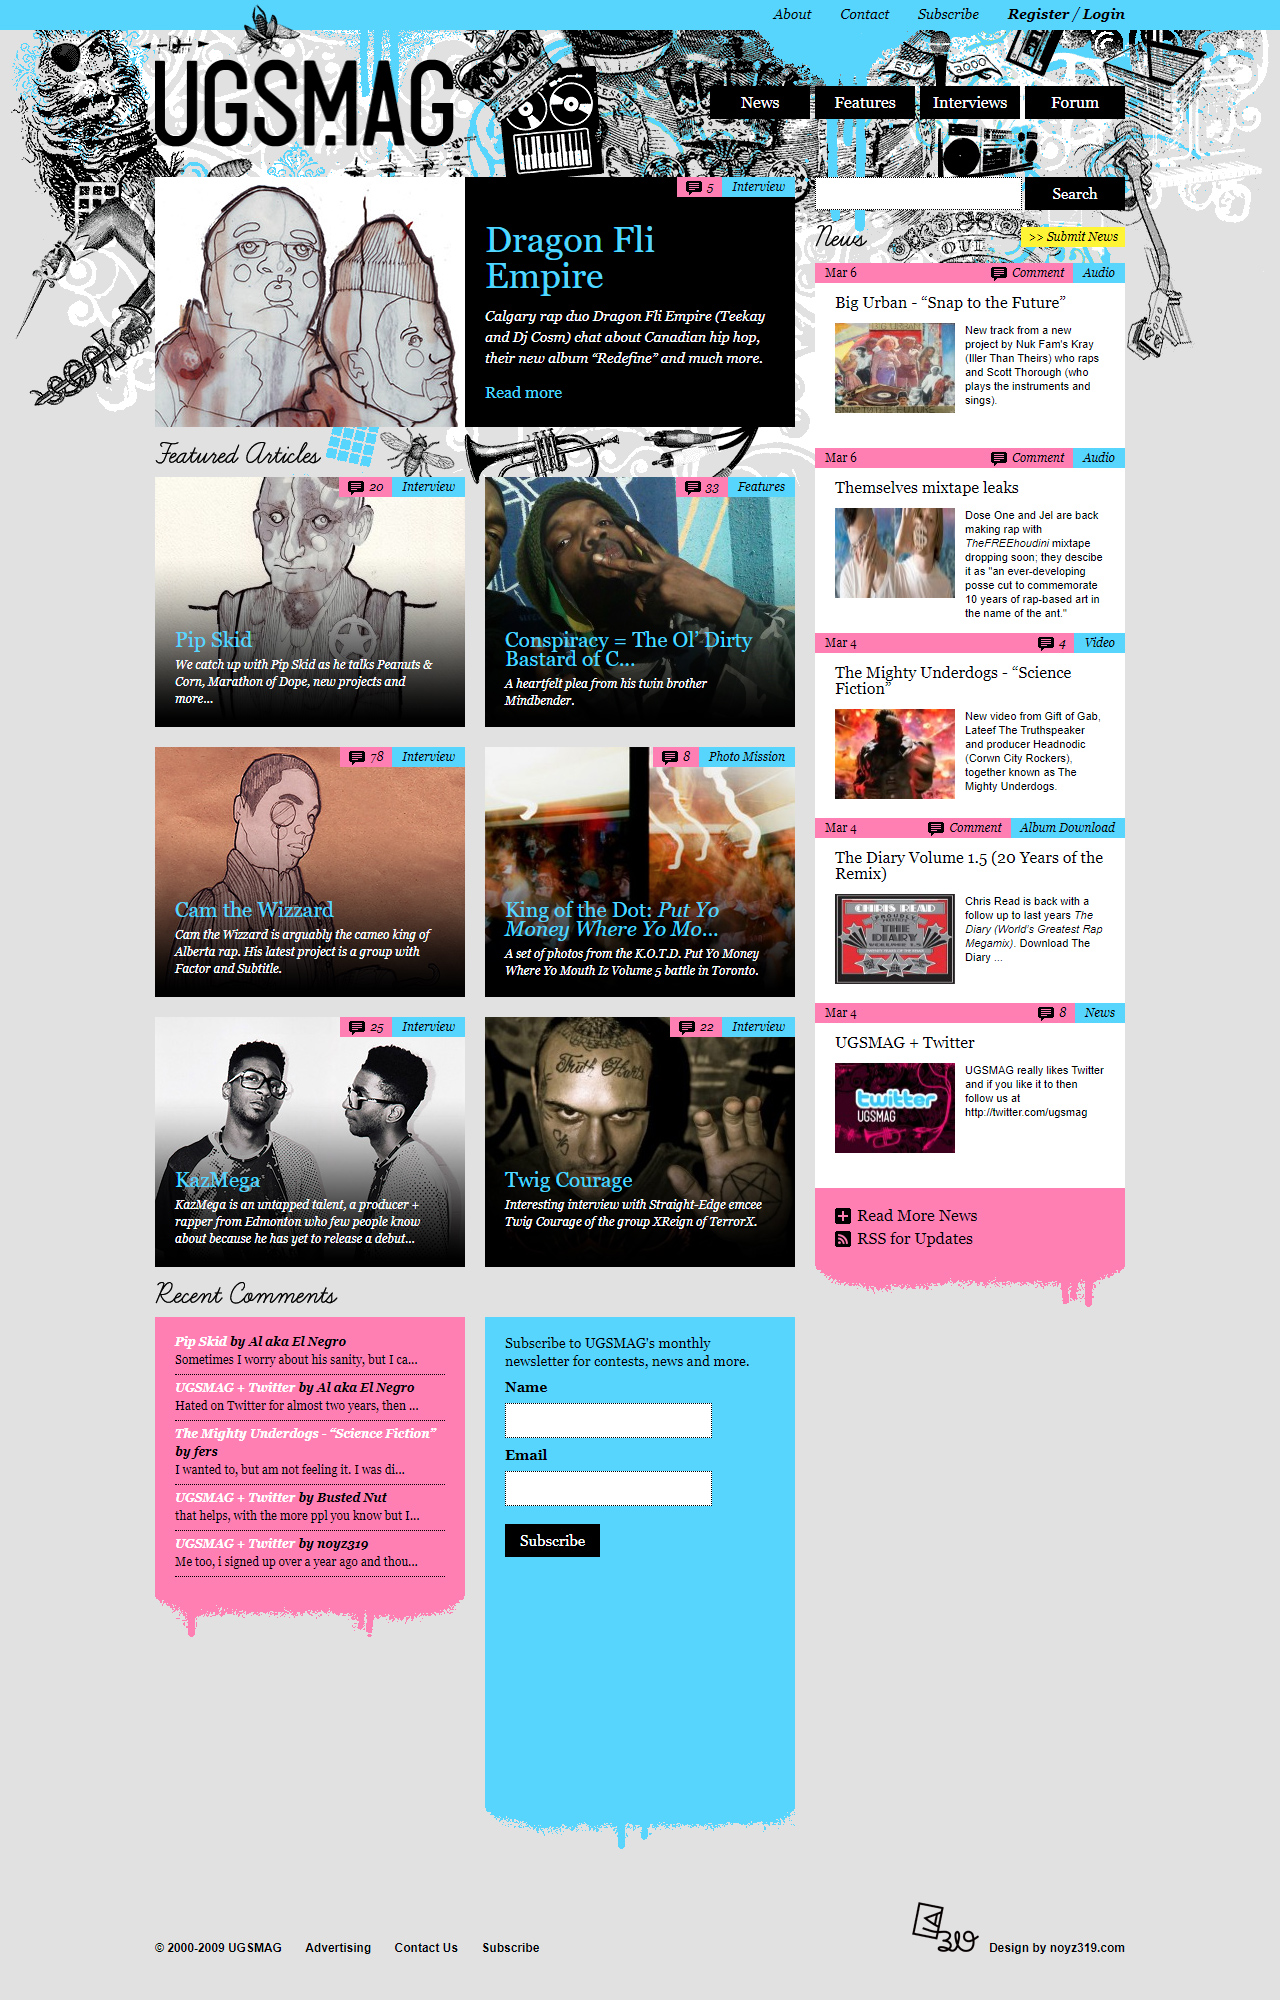 UGSMAG website in 2009